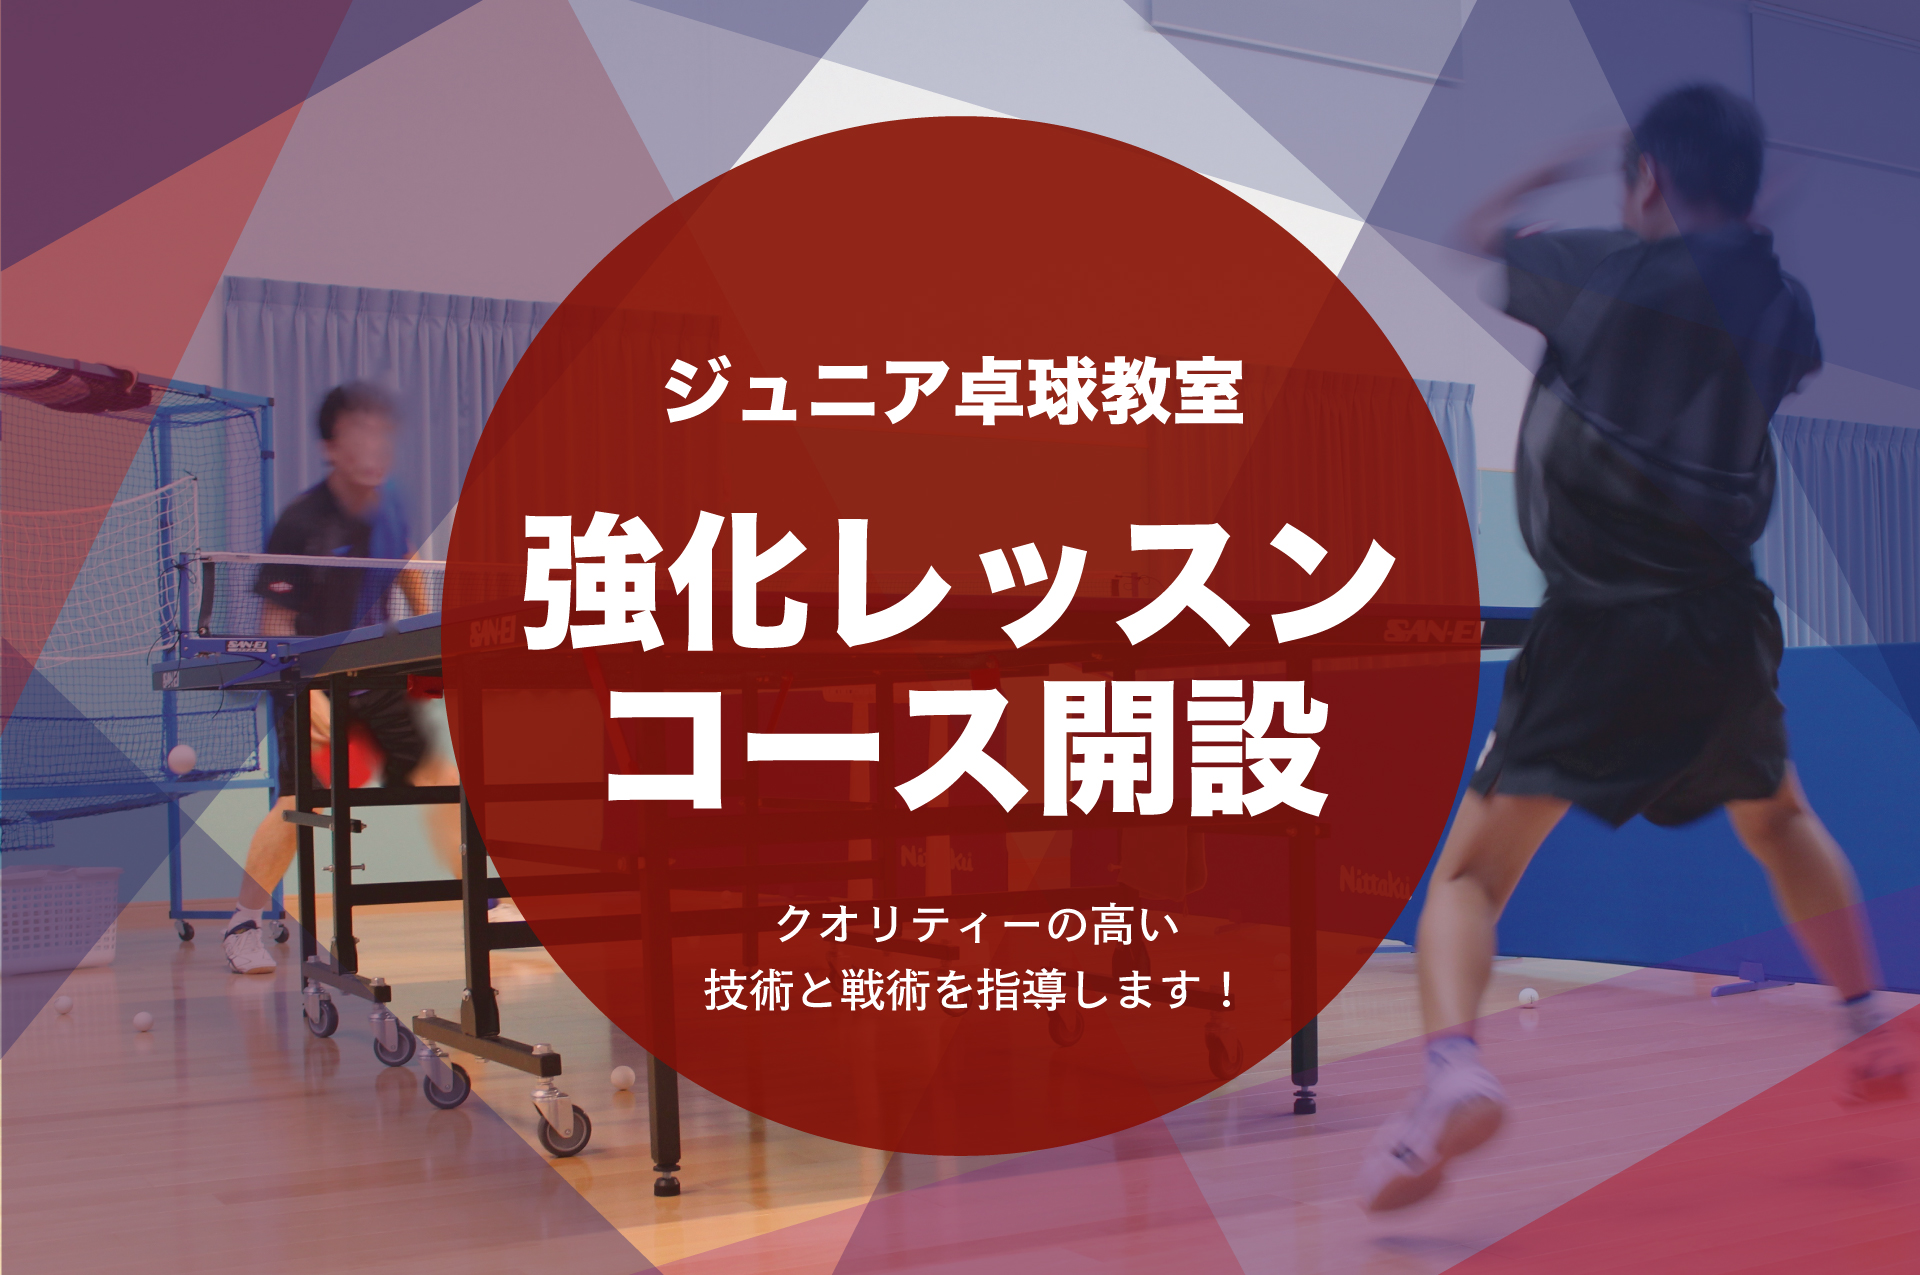 ジュニア卓球教室、強化レッスンコース開設